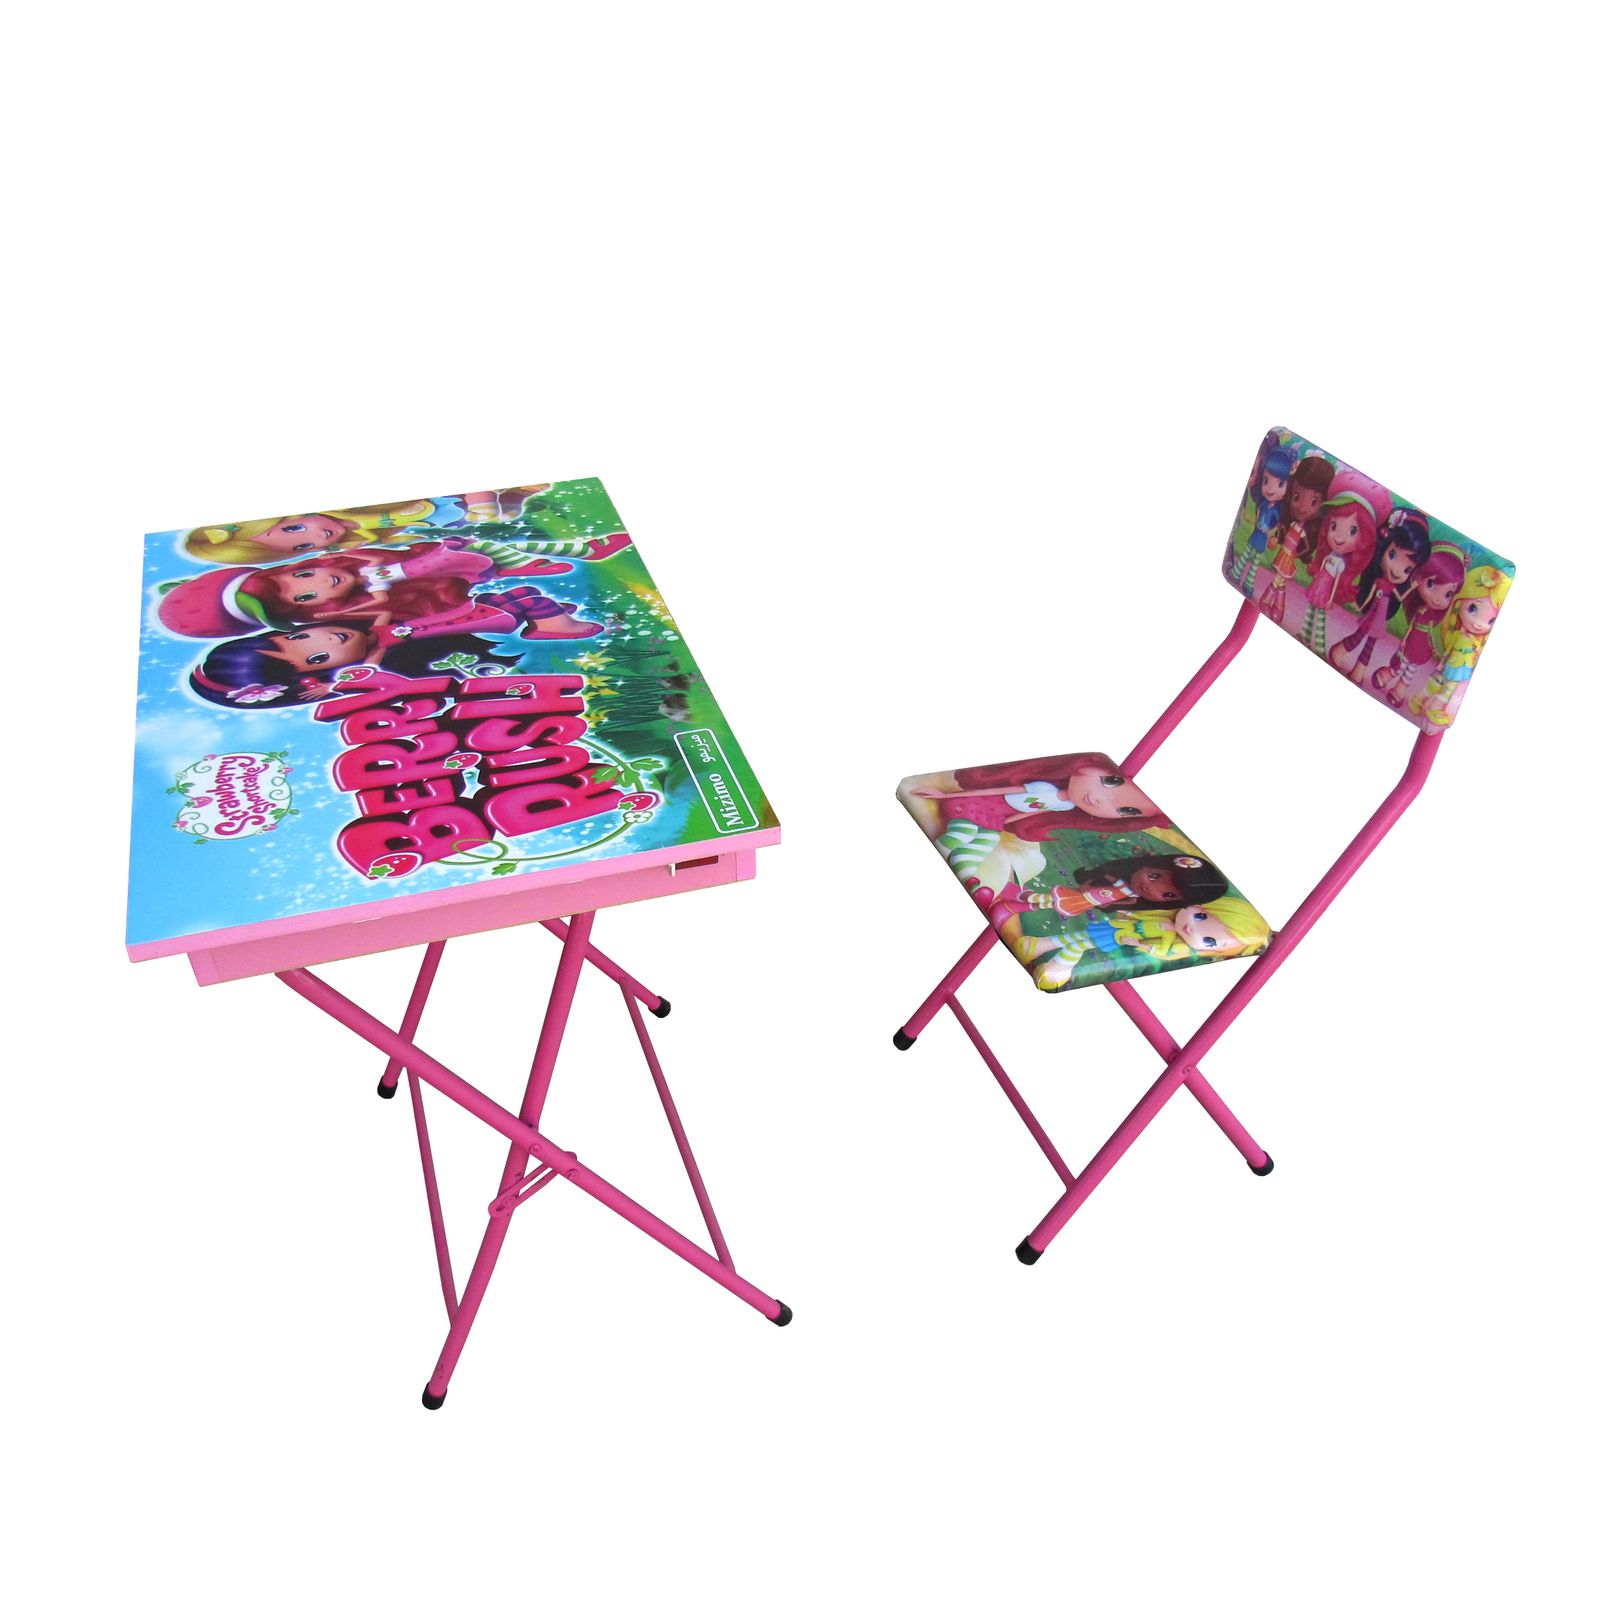 ست میز و صندلی کودک میزیمو مدل توت فرنگی کد 51 -  - 2